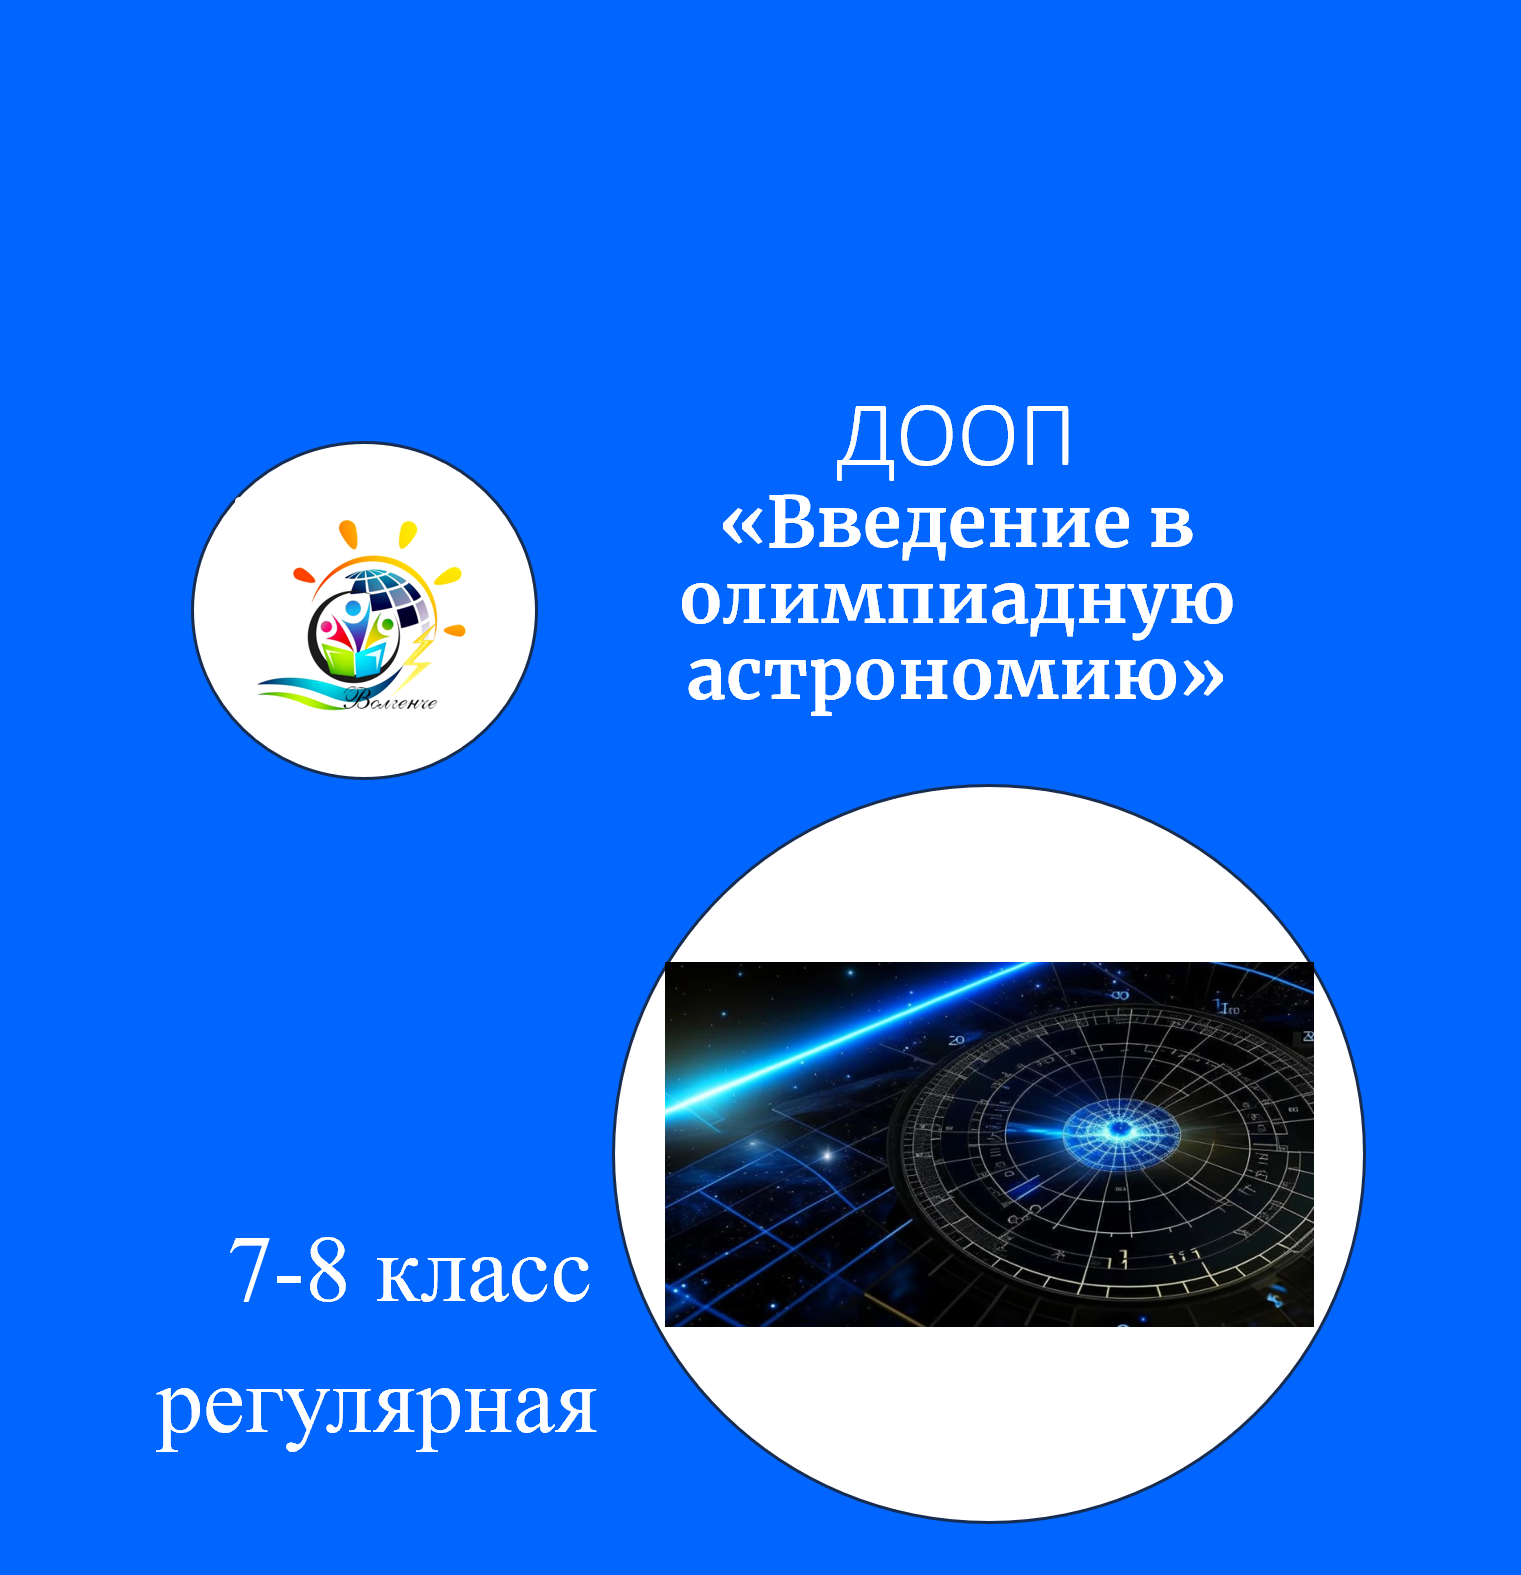 ДООП "Введение в олимпиадную астрономию" Модуль 1